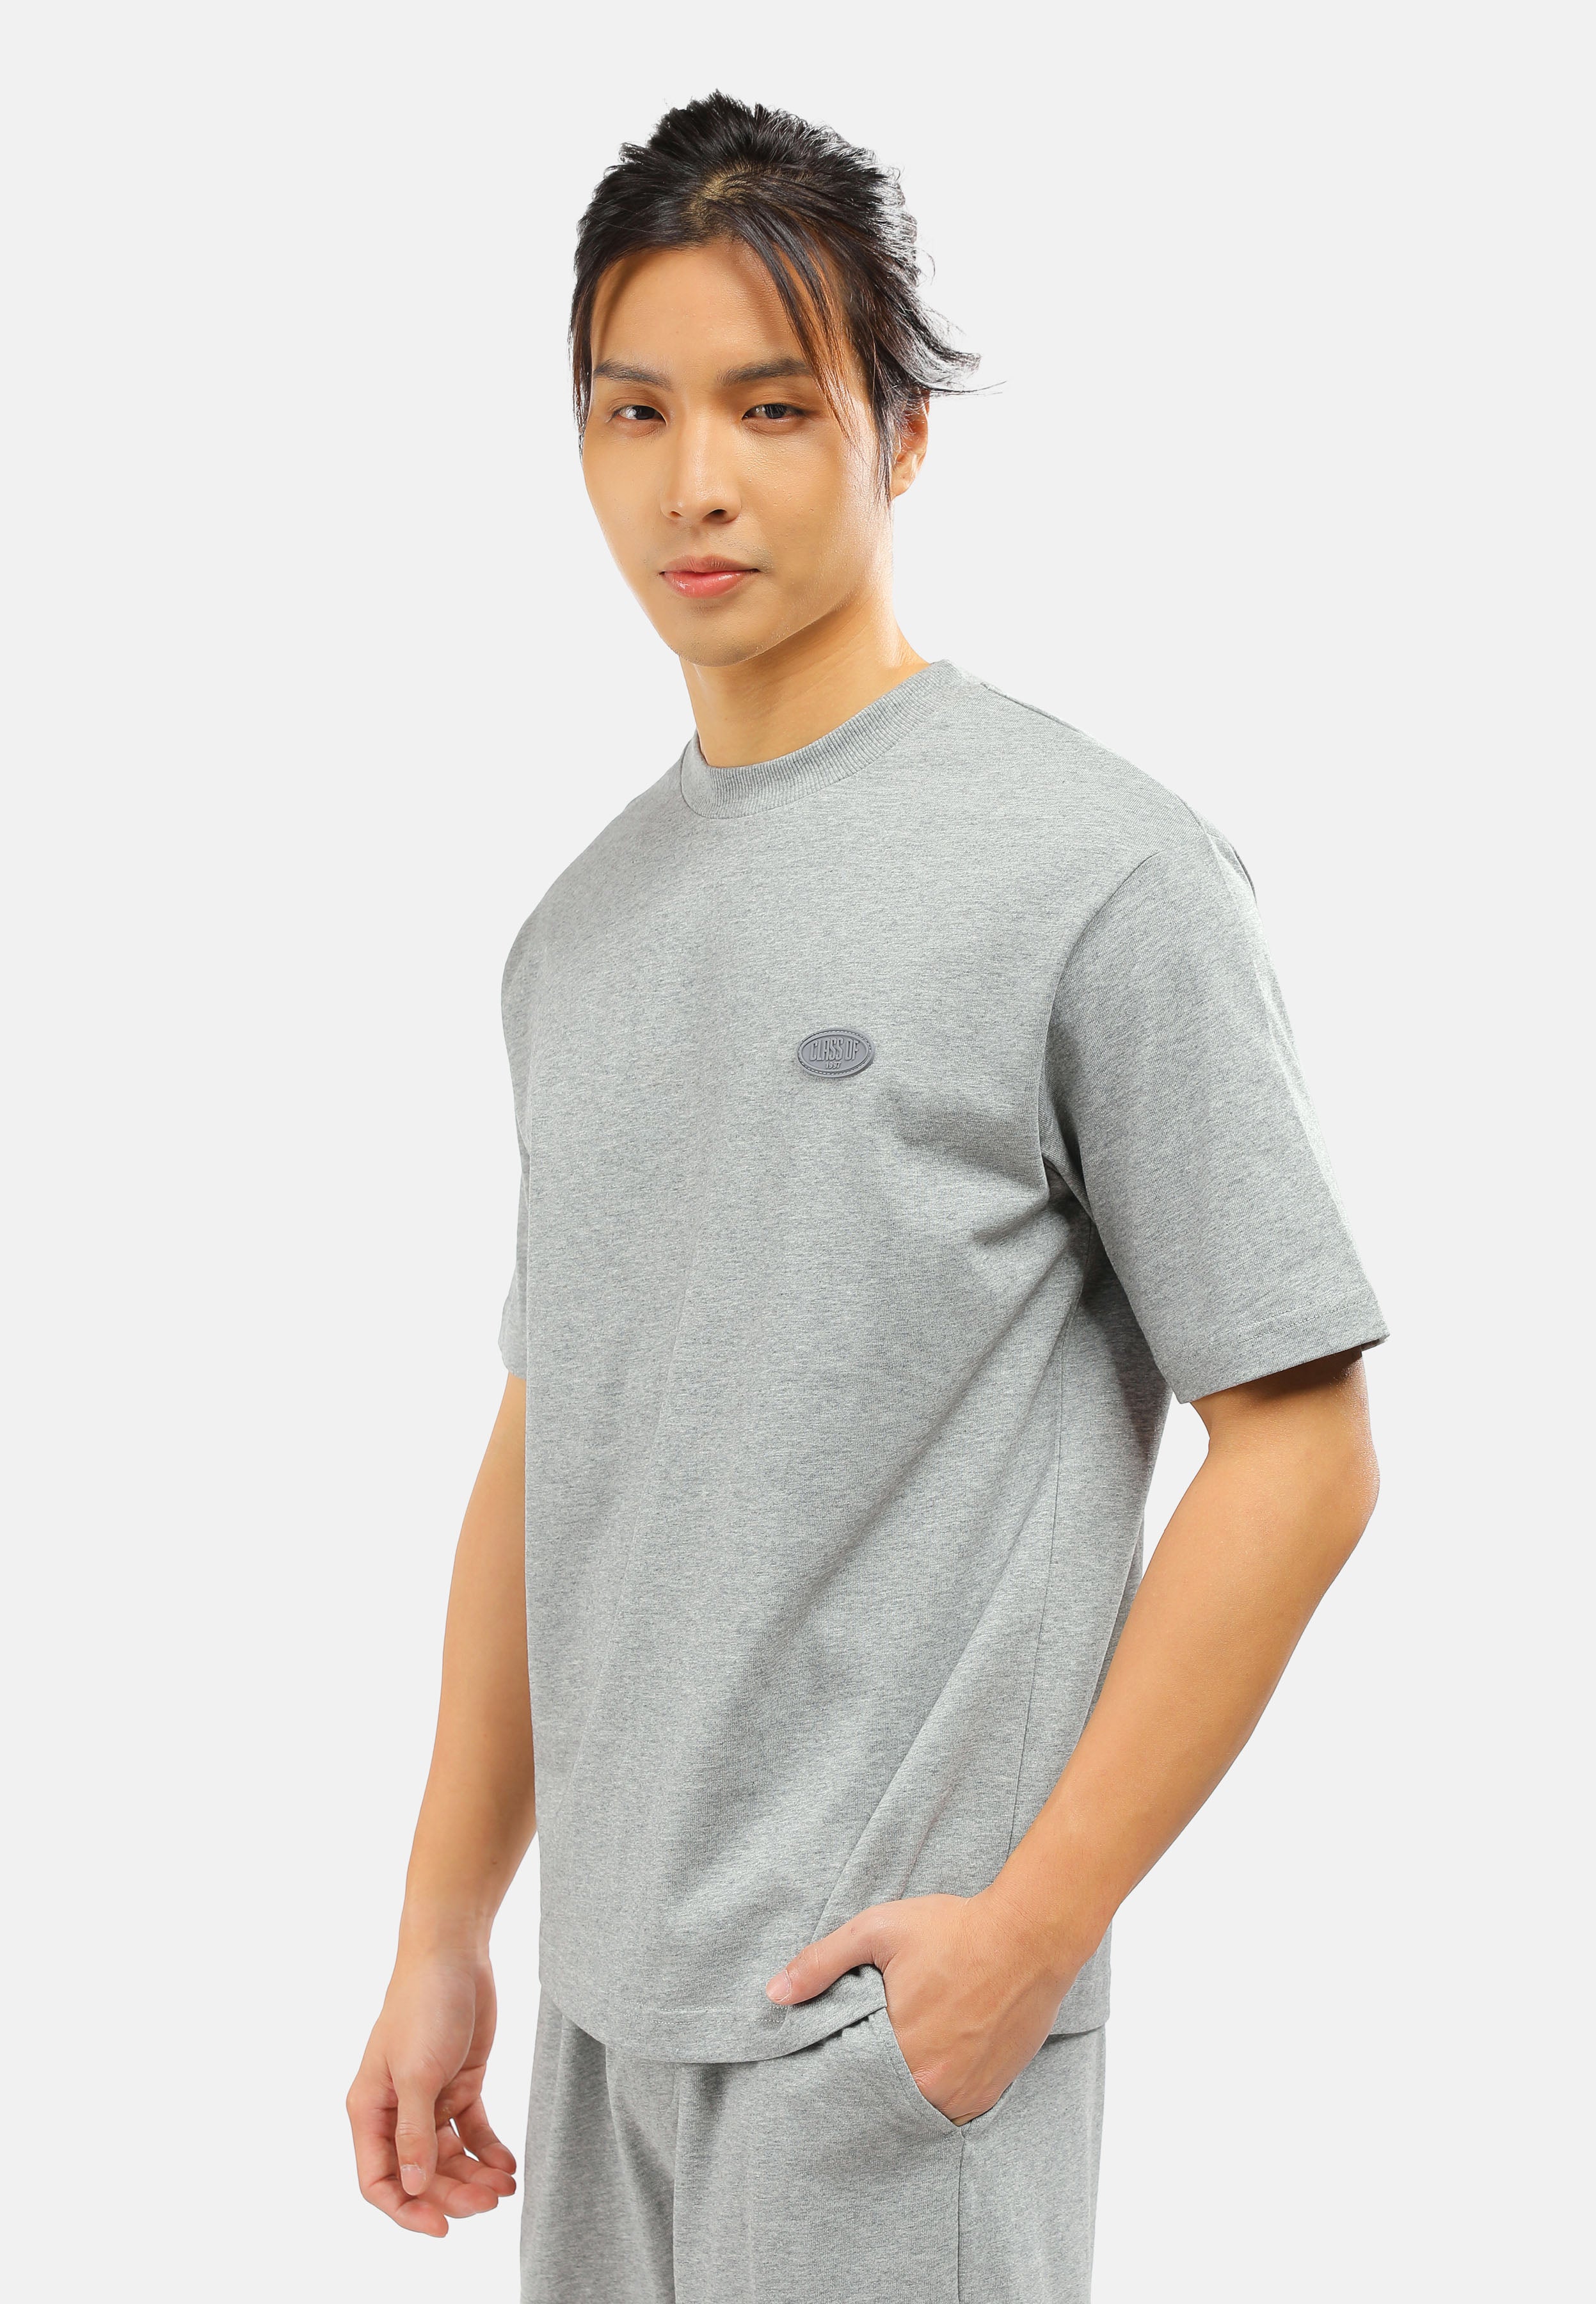 CHEETAH Men Basic Short Sleeves T-Shirt - 99096 (MD-LM)